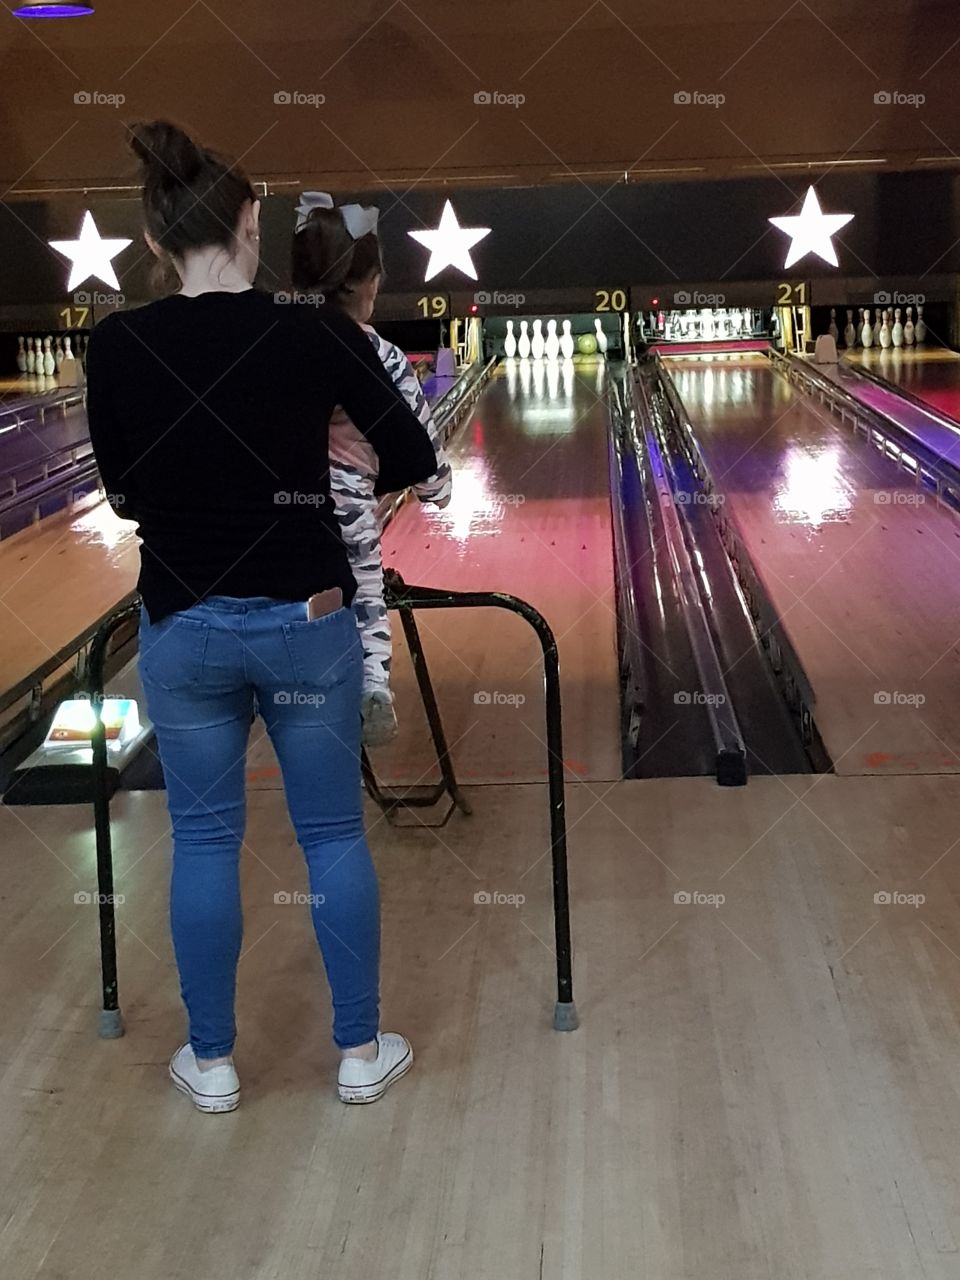 making bowling memories